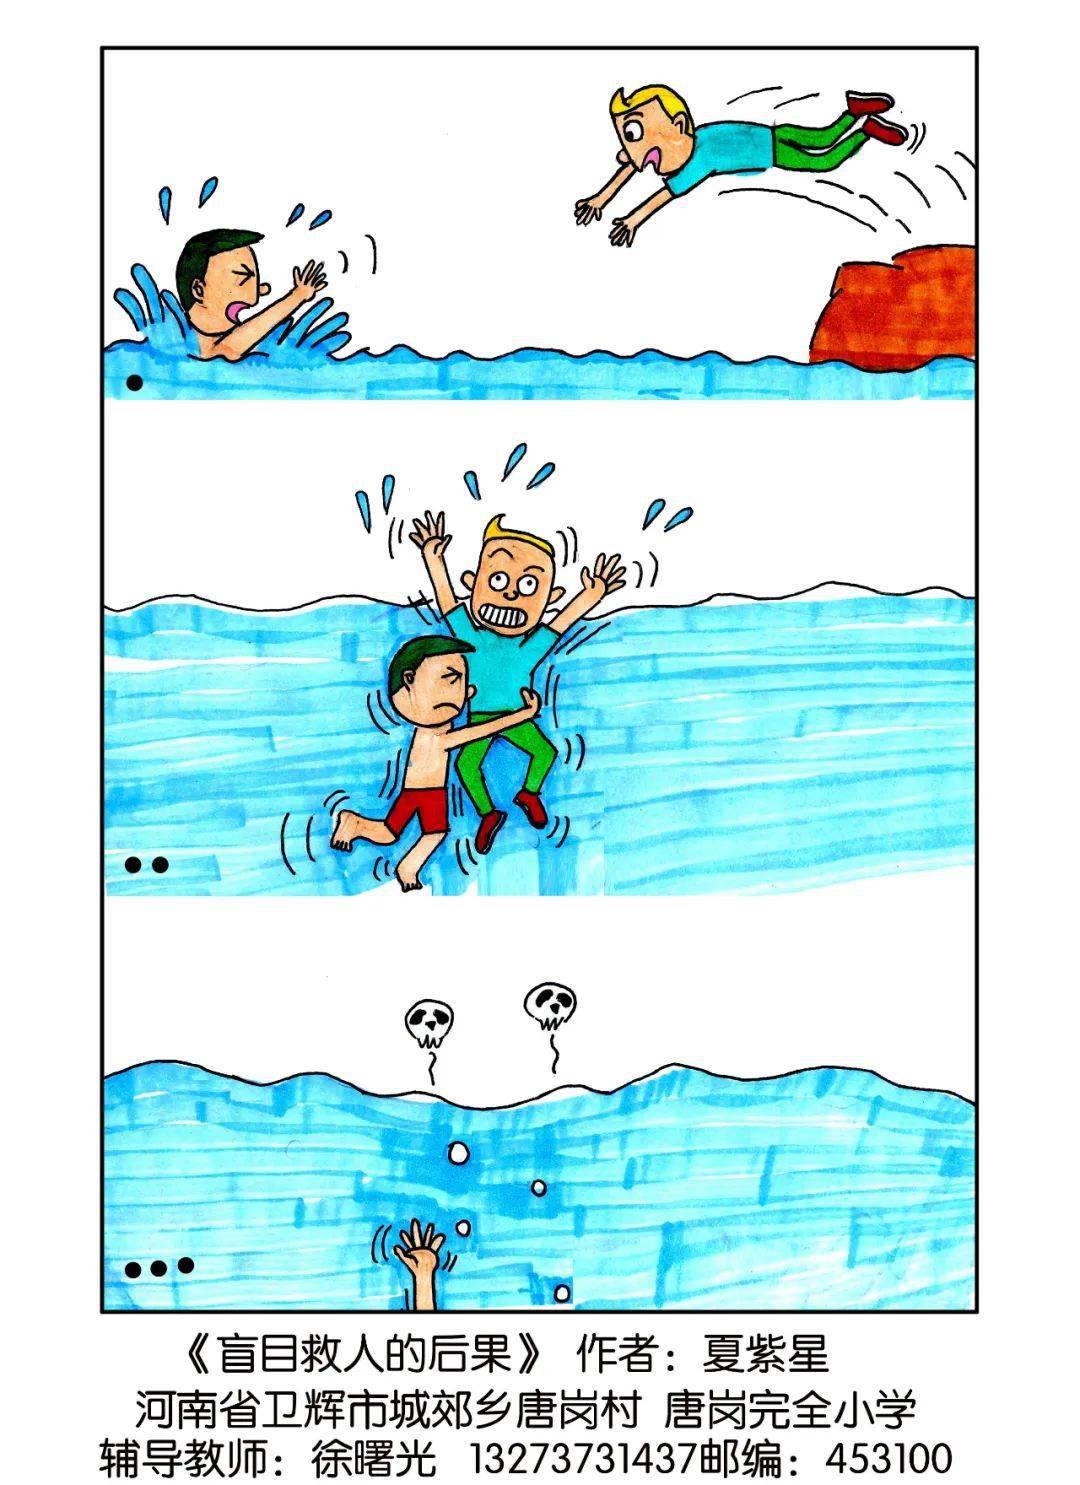 防溺水安全教育漫画版来啦